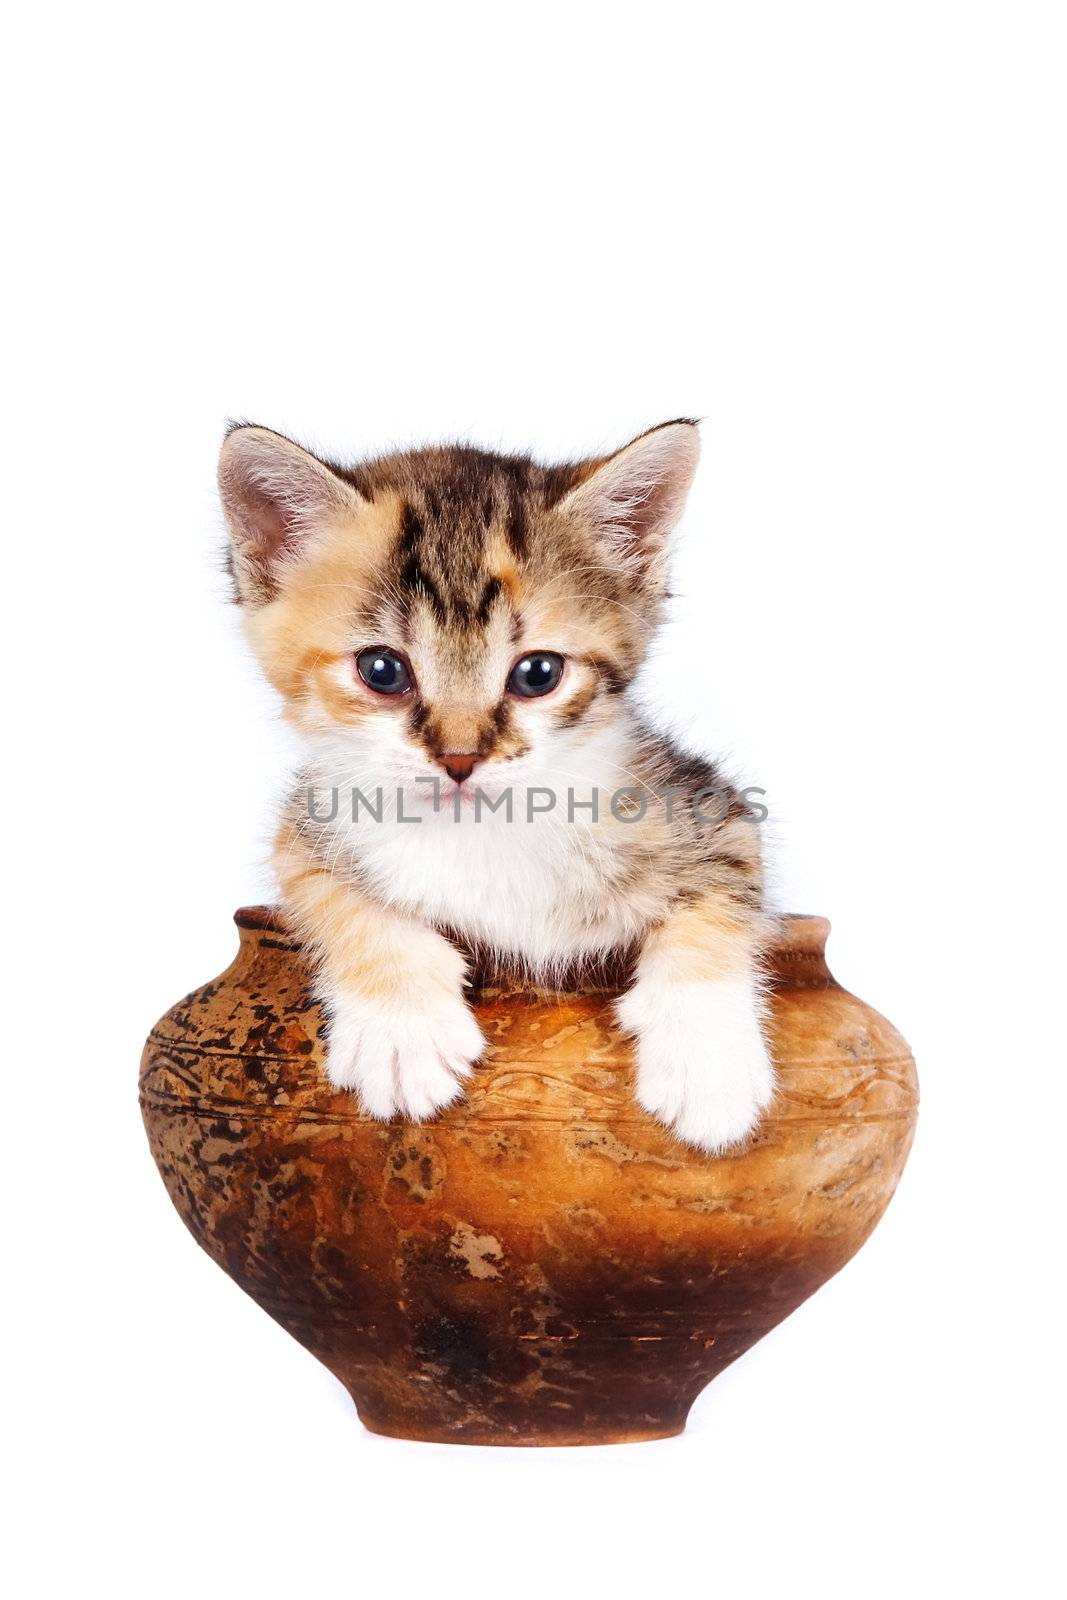 Multi-colored kitten in a clay pot by Azaliya